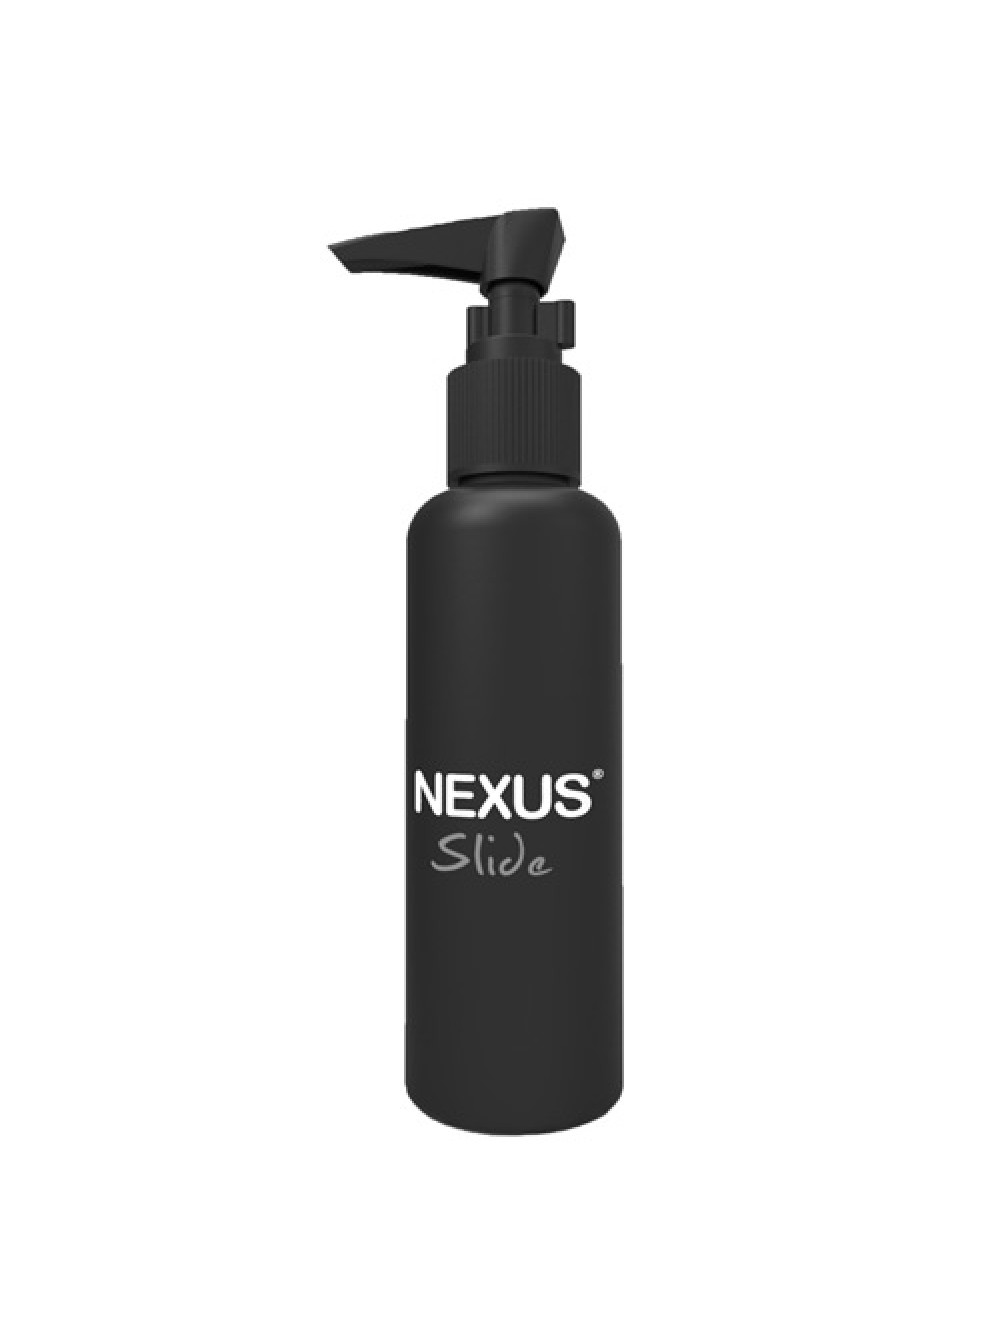 Nexus Slide Water Based Lubricant 5060274220646